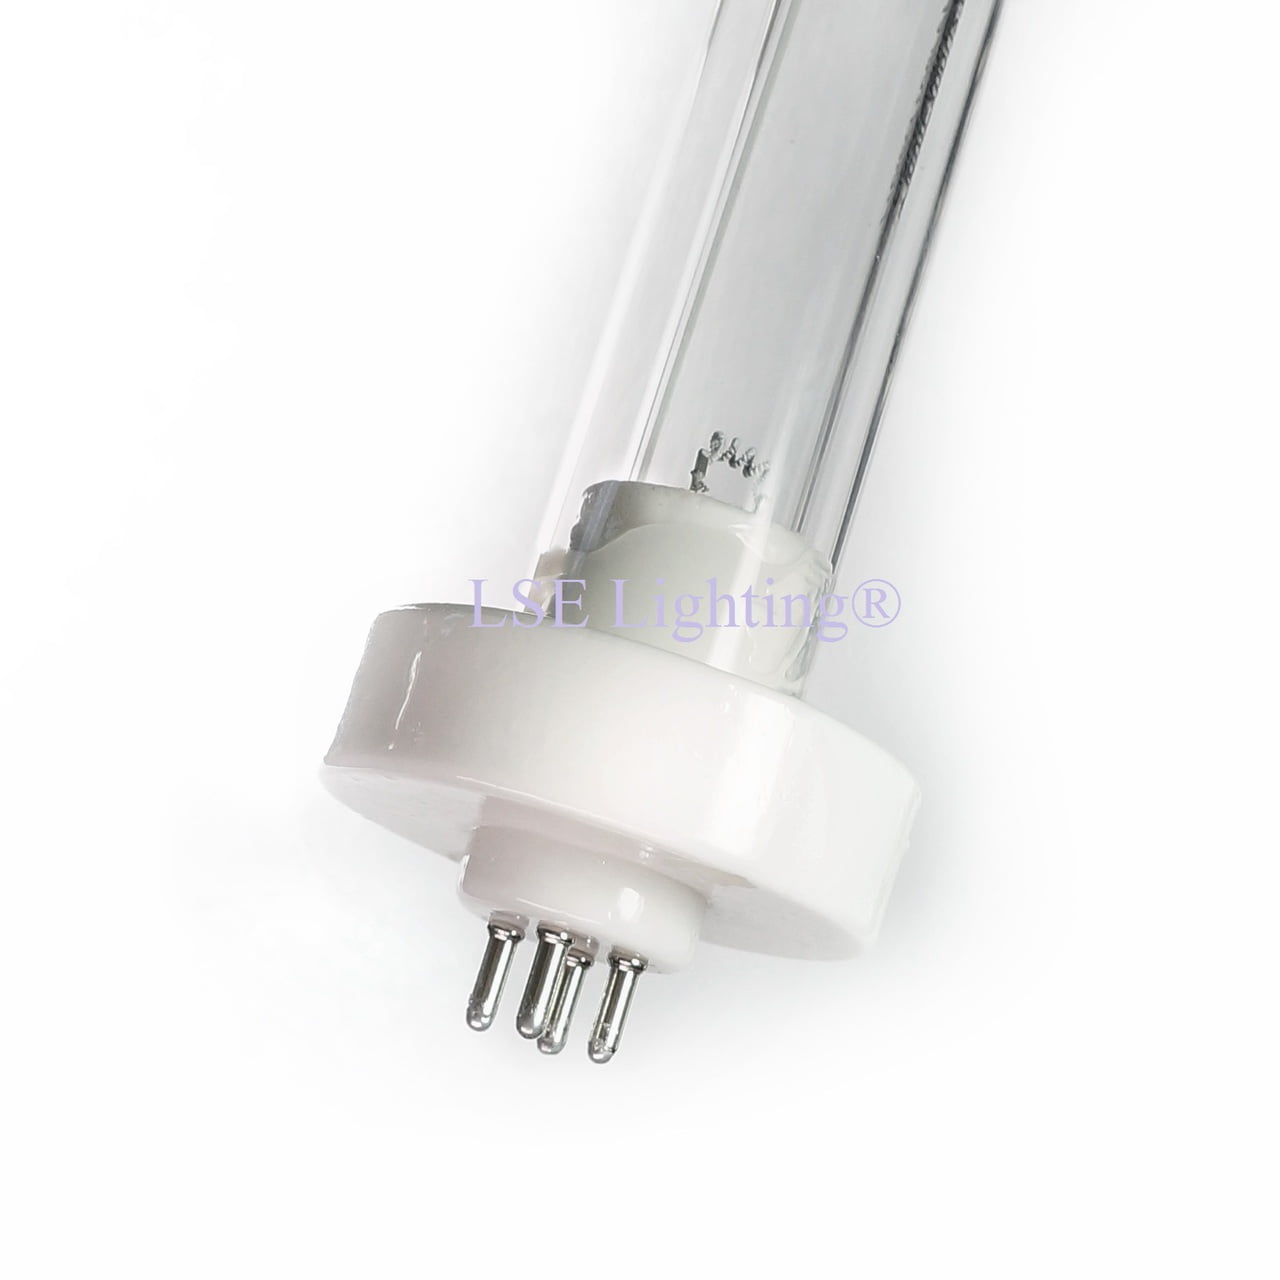 LSE Lighting UV-C Bulb 06073 20 for Bio-Fighter UV System 